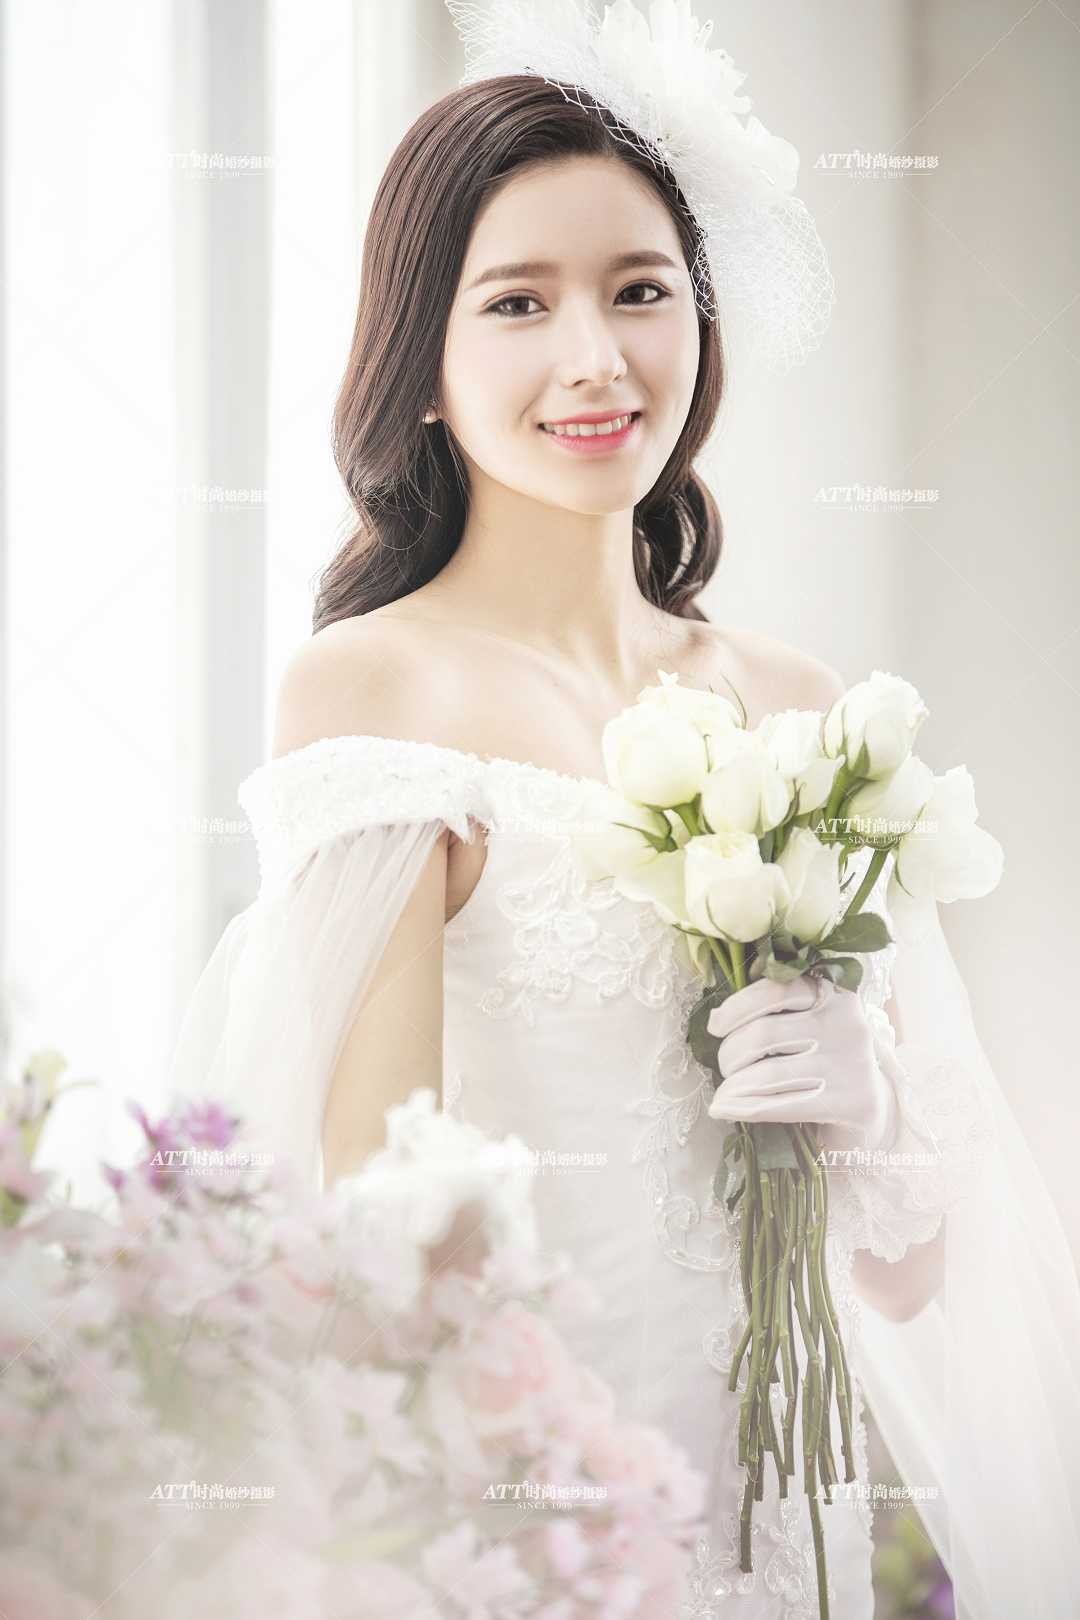 石家庄婚纱摄影小脸美女在韩式婚纱照中如何更上镜